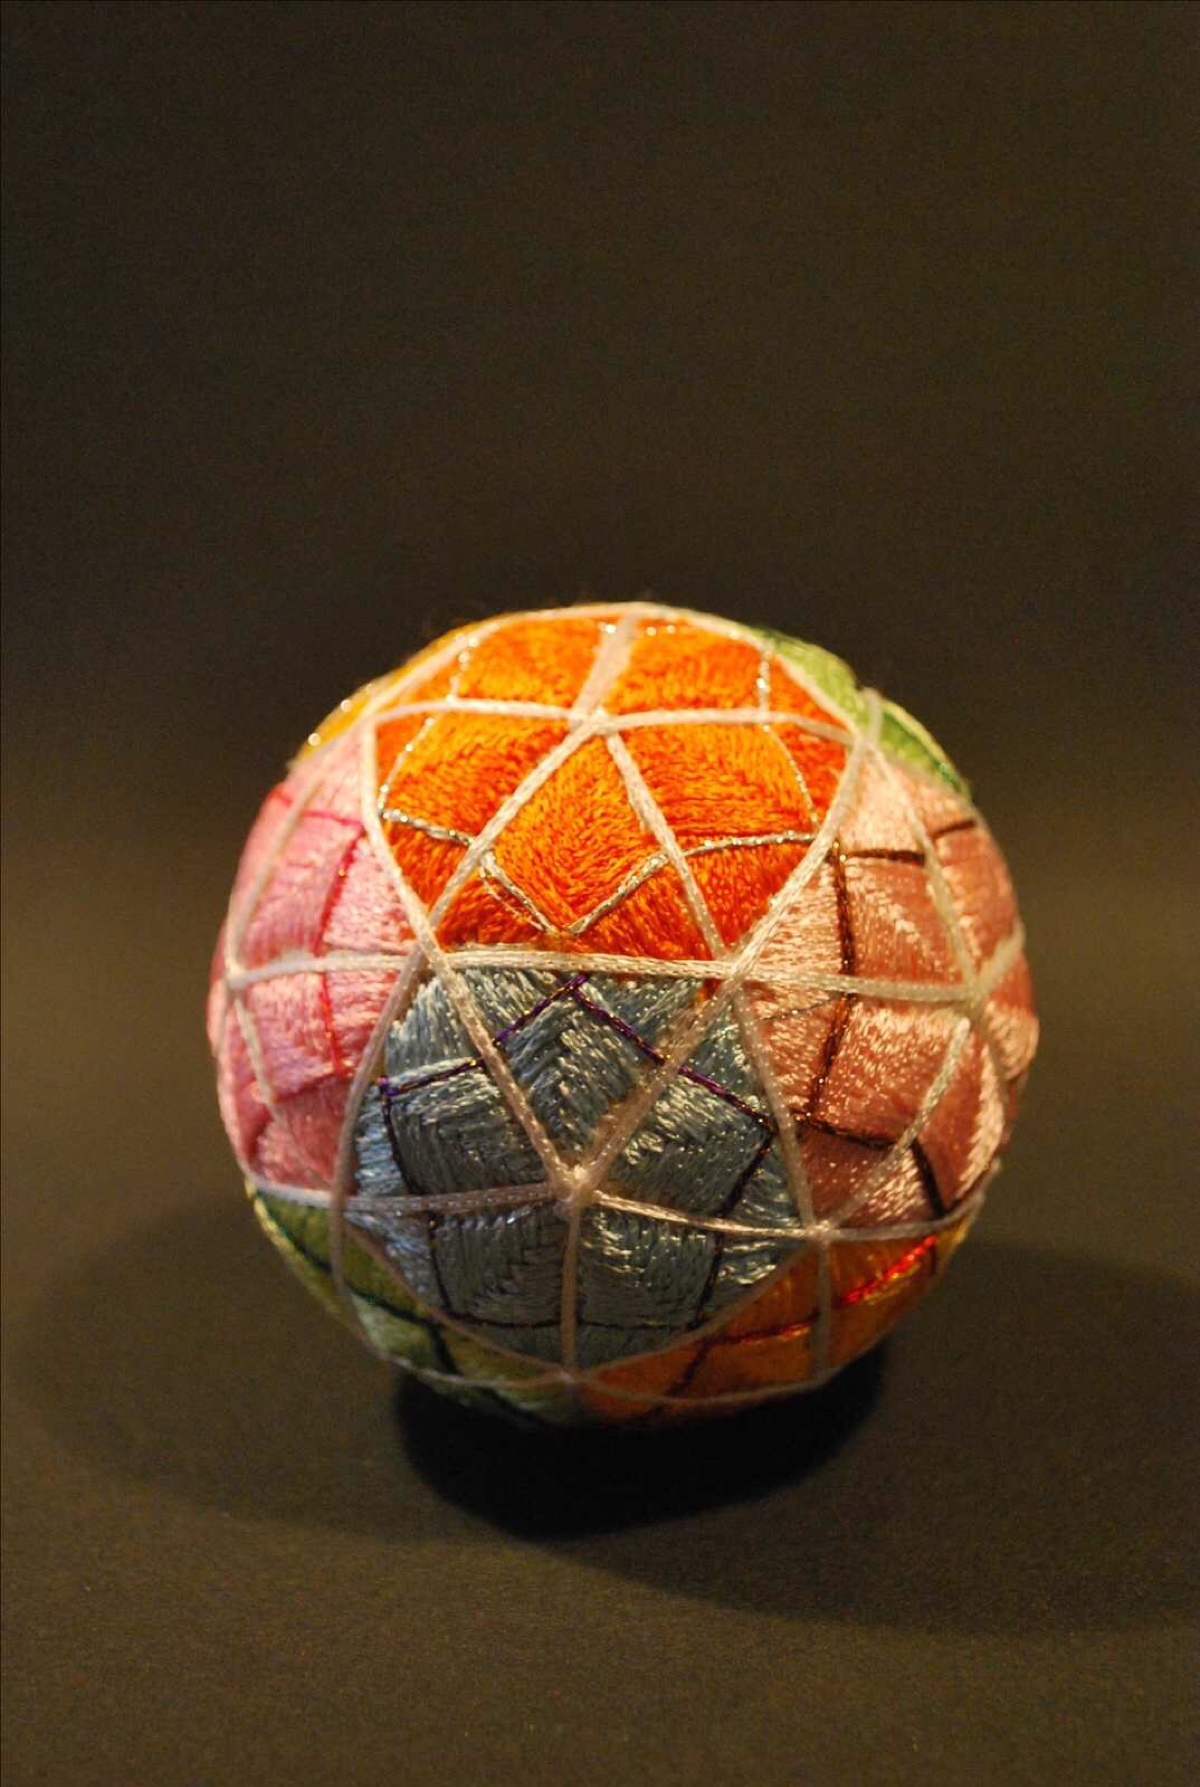 手鞠球(temari)是民间艺术的一种形式,起源于中国,而后成为了一种日本